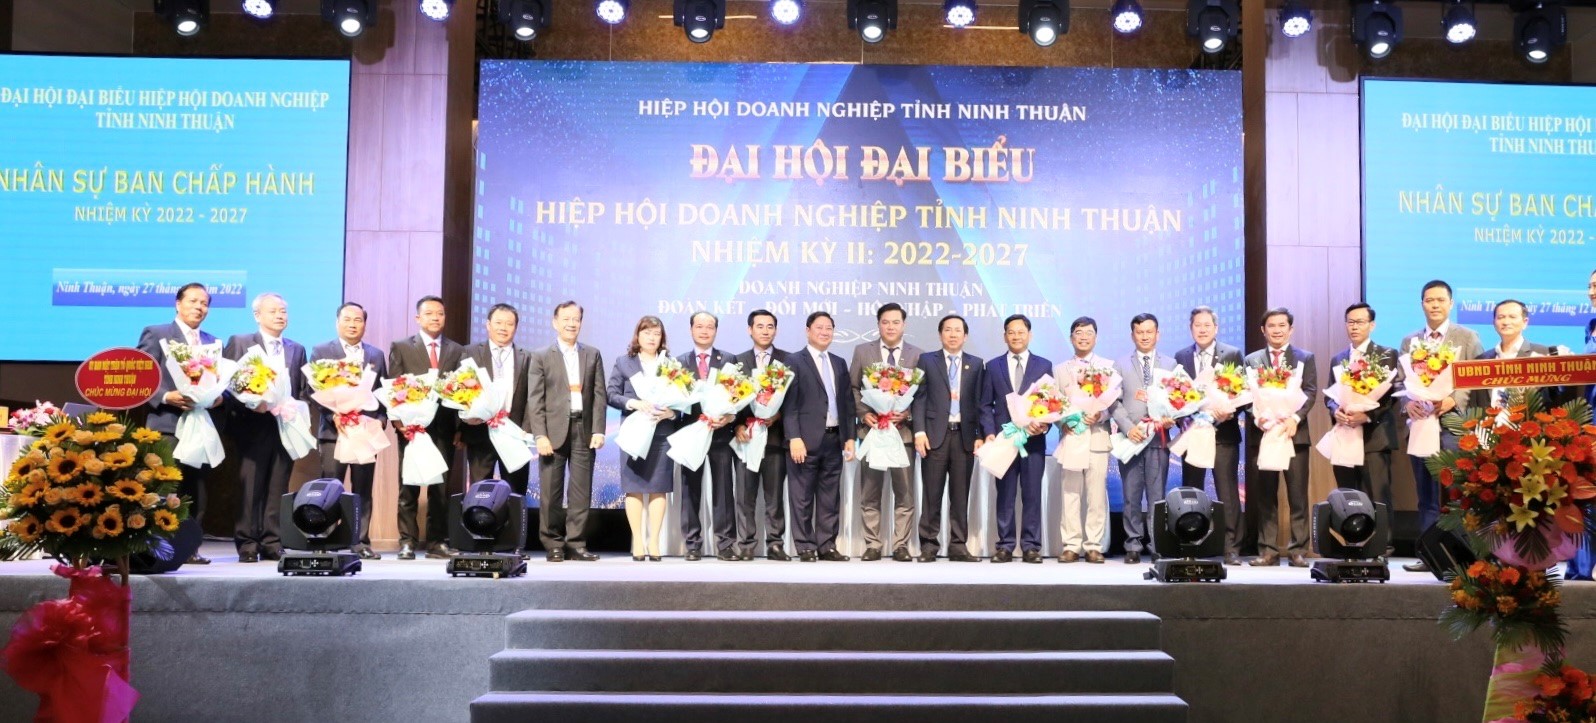 Giám đốc Công ty Cổ phần Thành Đông Ninh Thuận được bầu làm Chủ tịch Hiệp hội doanh nghiệp tỉnh - Ảnh 2.